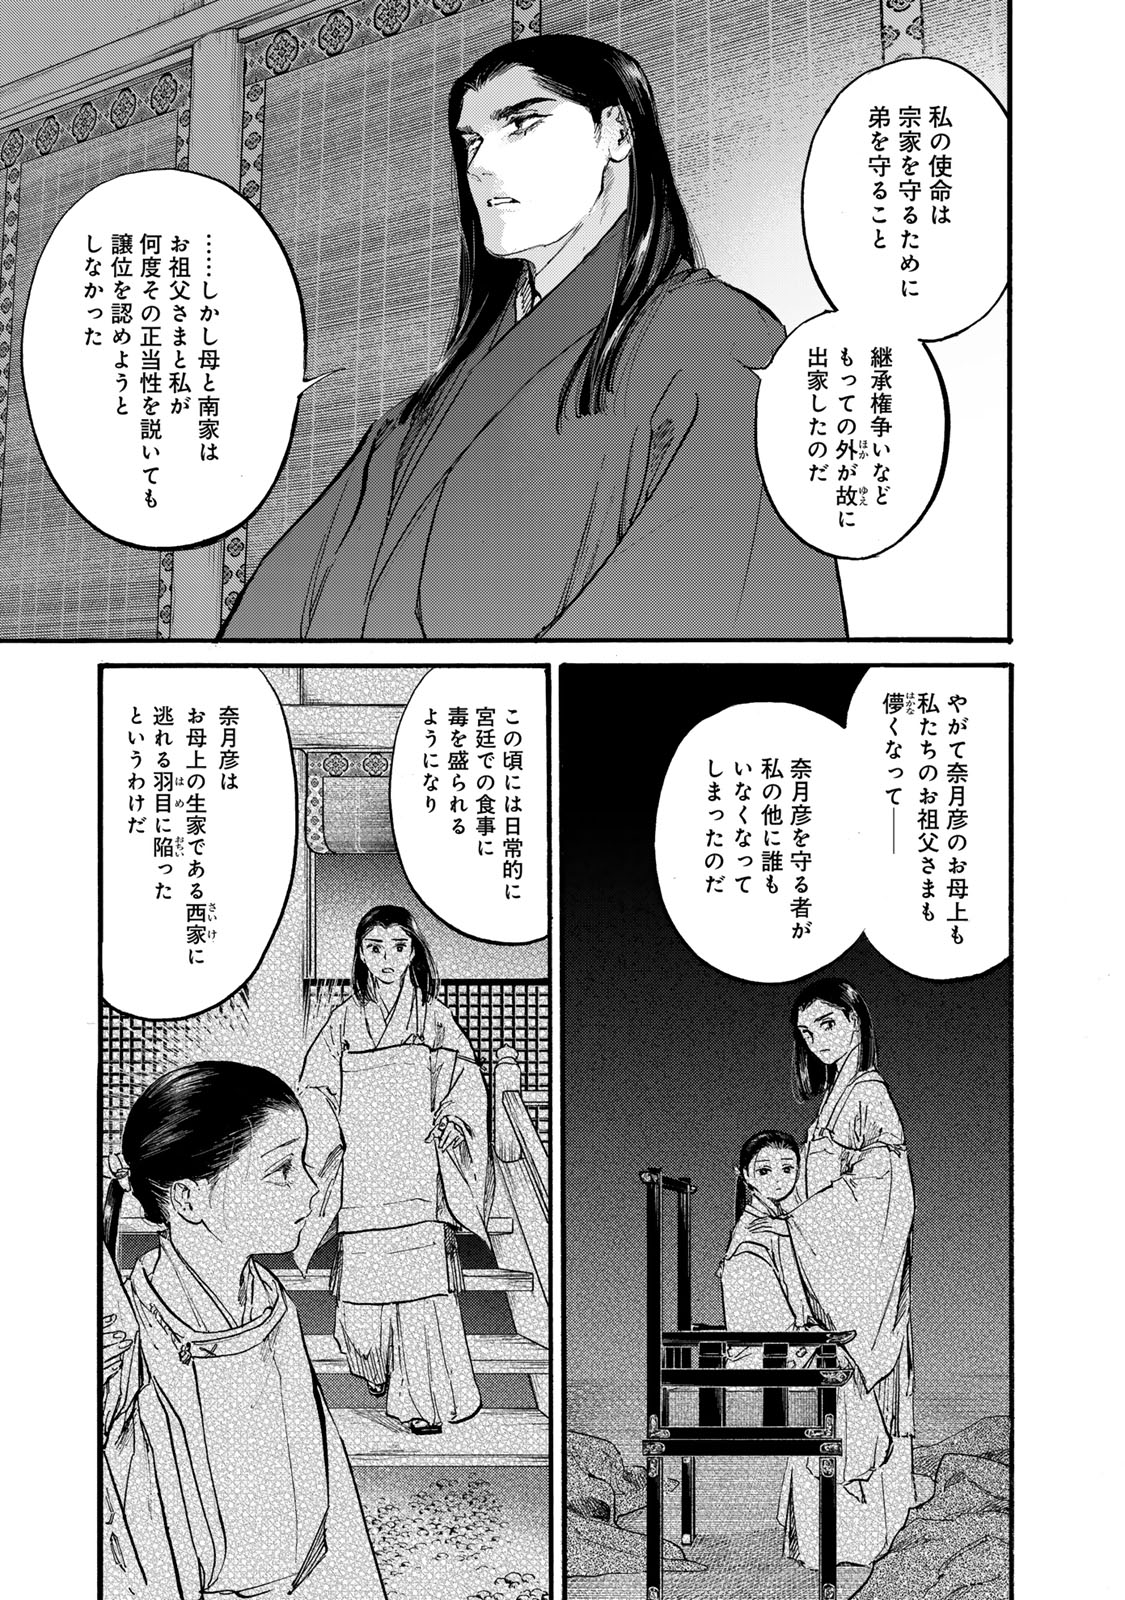 Karasu wa Aruji wo Erabanai - Chapter 43 - Page 7